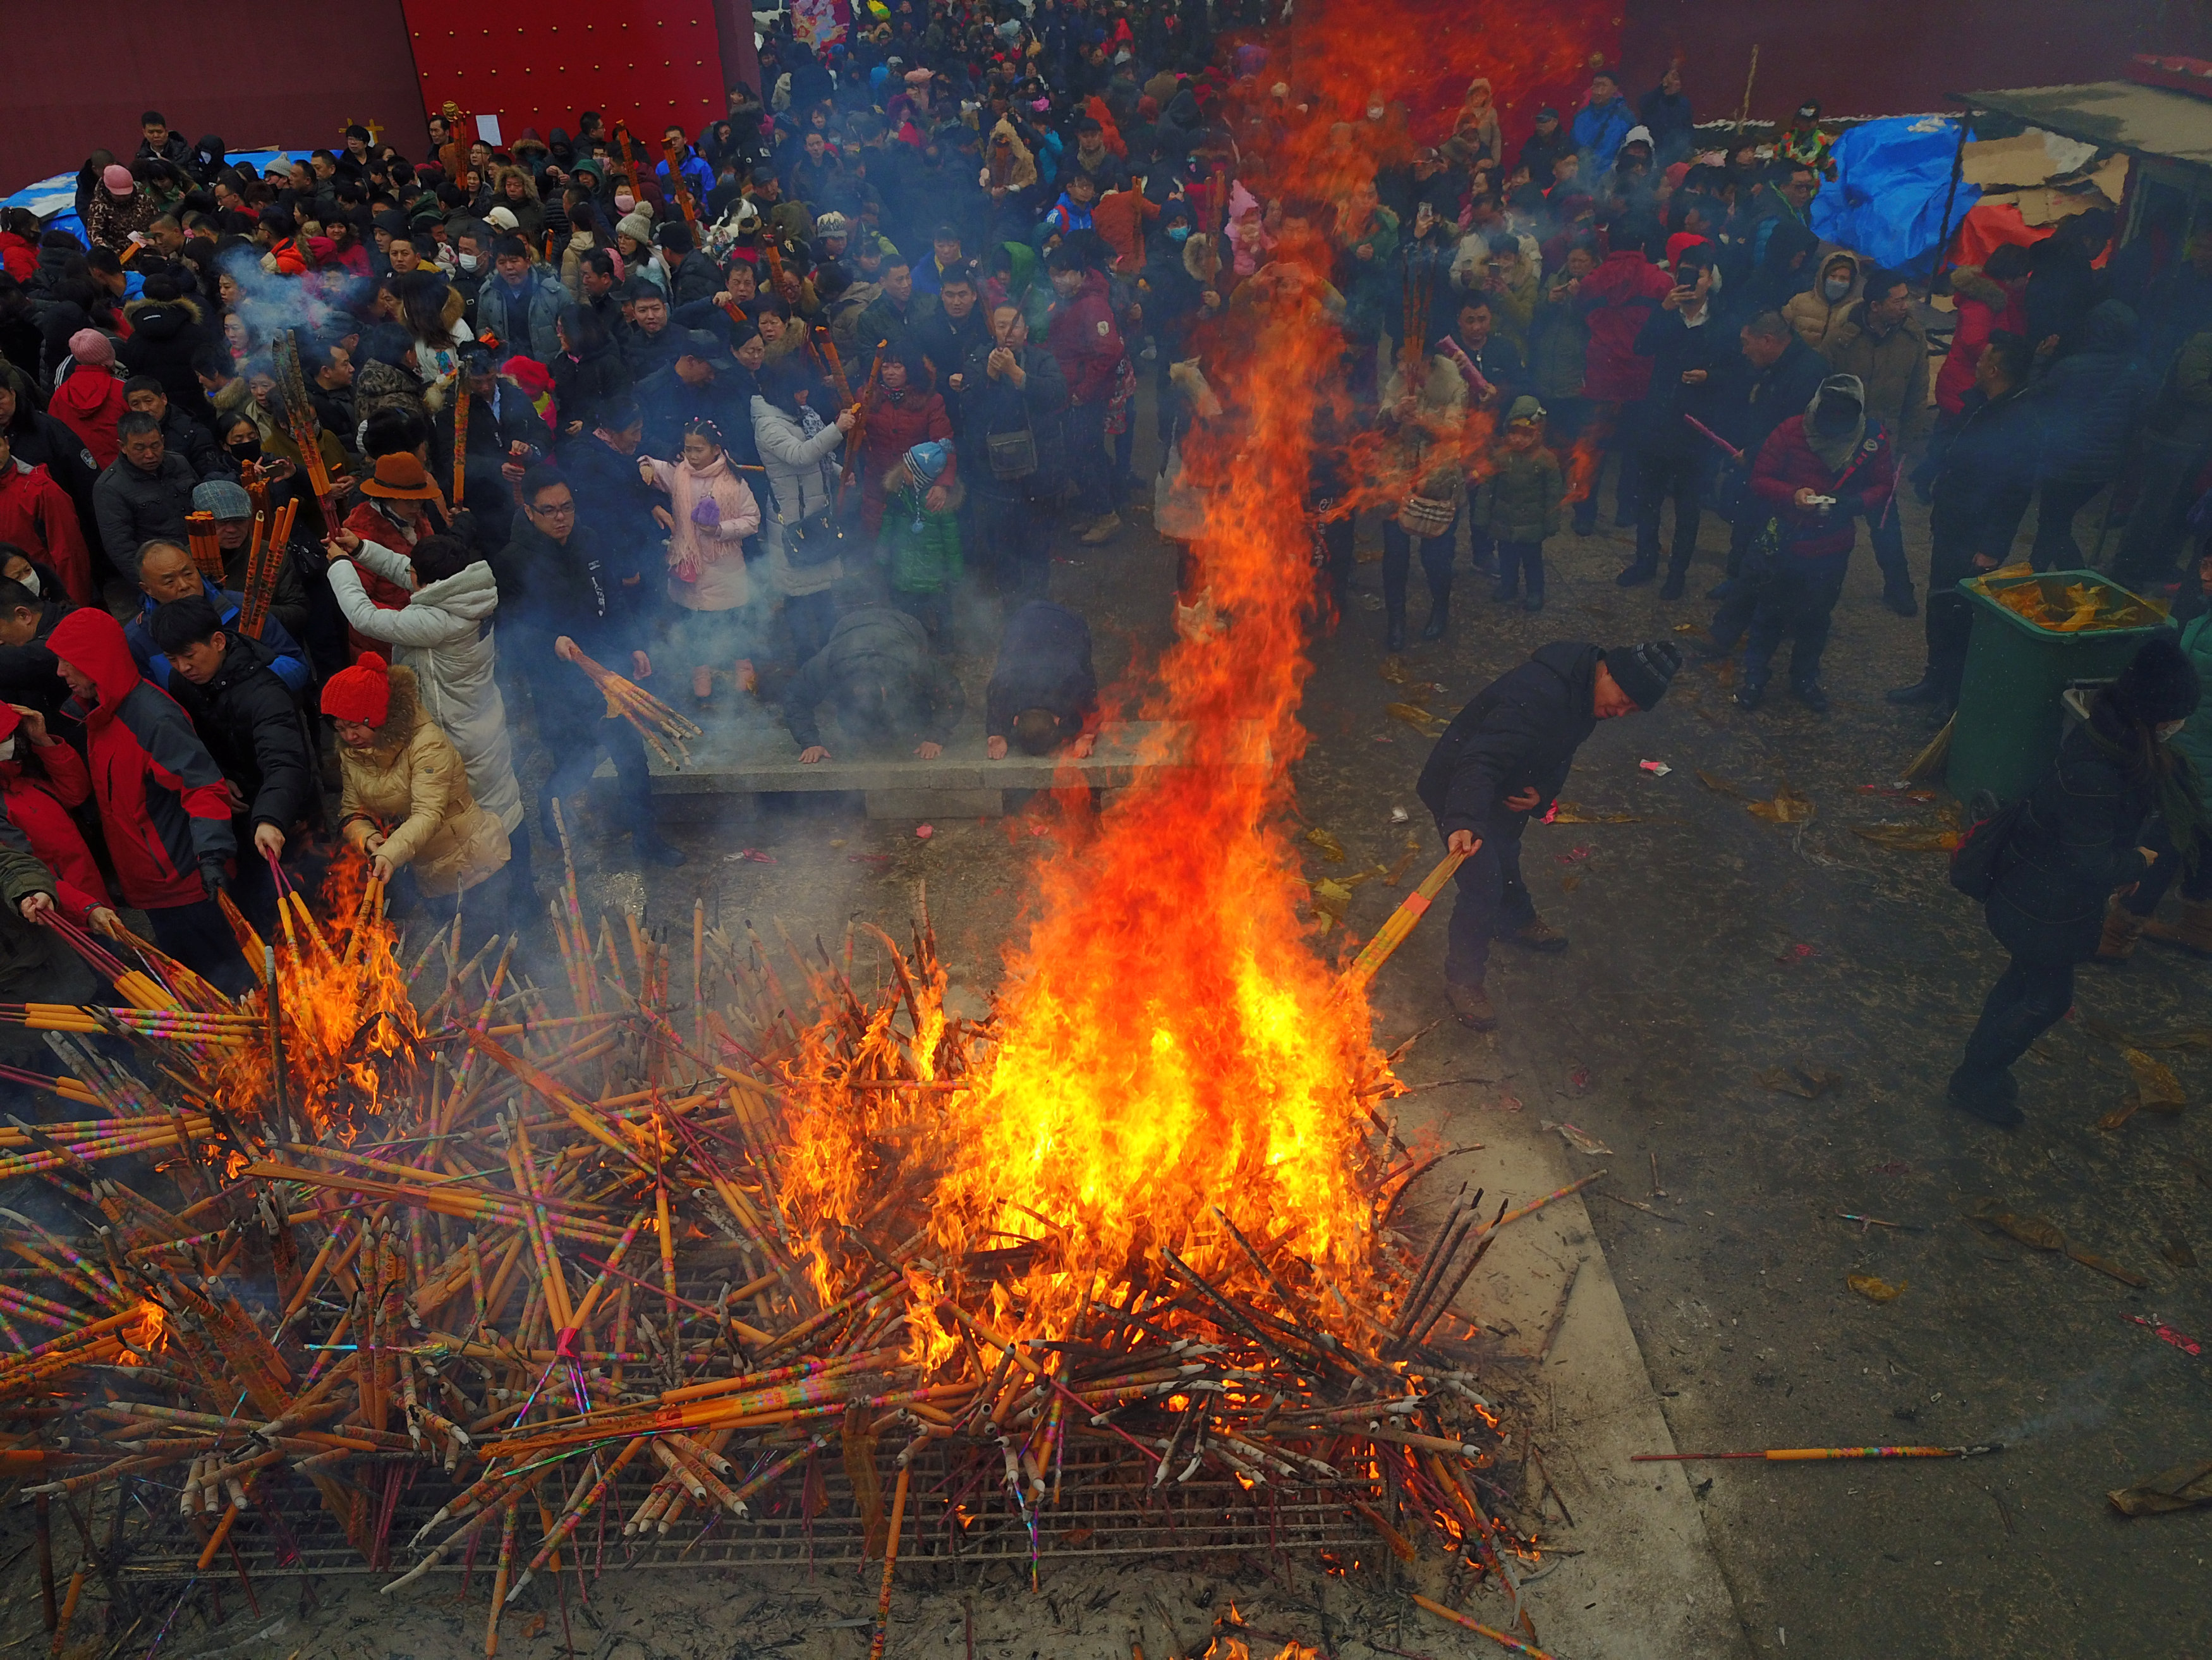 مواطنون يشعلون كميات كبيرة من البخور فى شوارع الصين احتفالًا بالسنة القمرية الجديدة